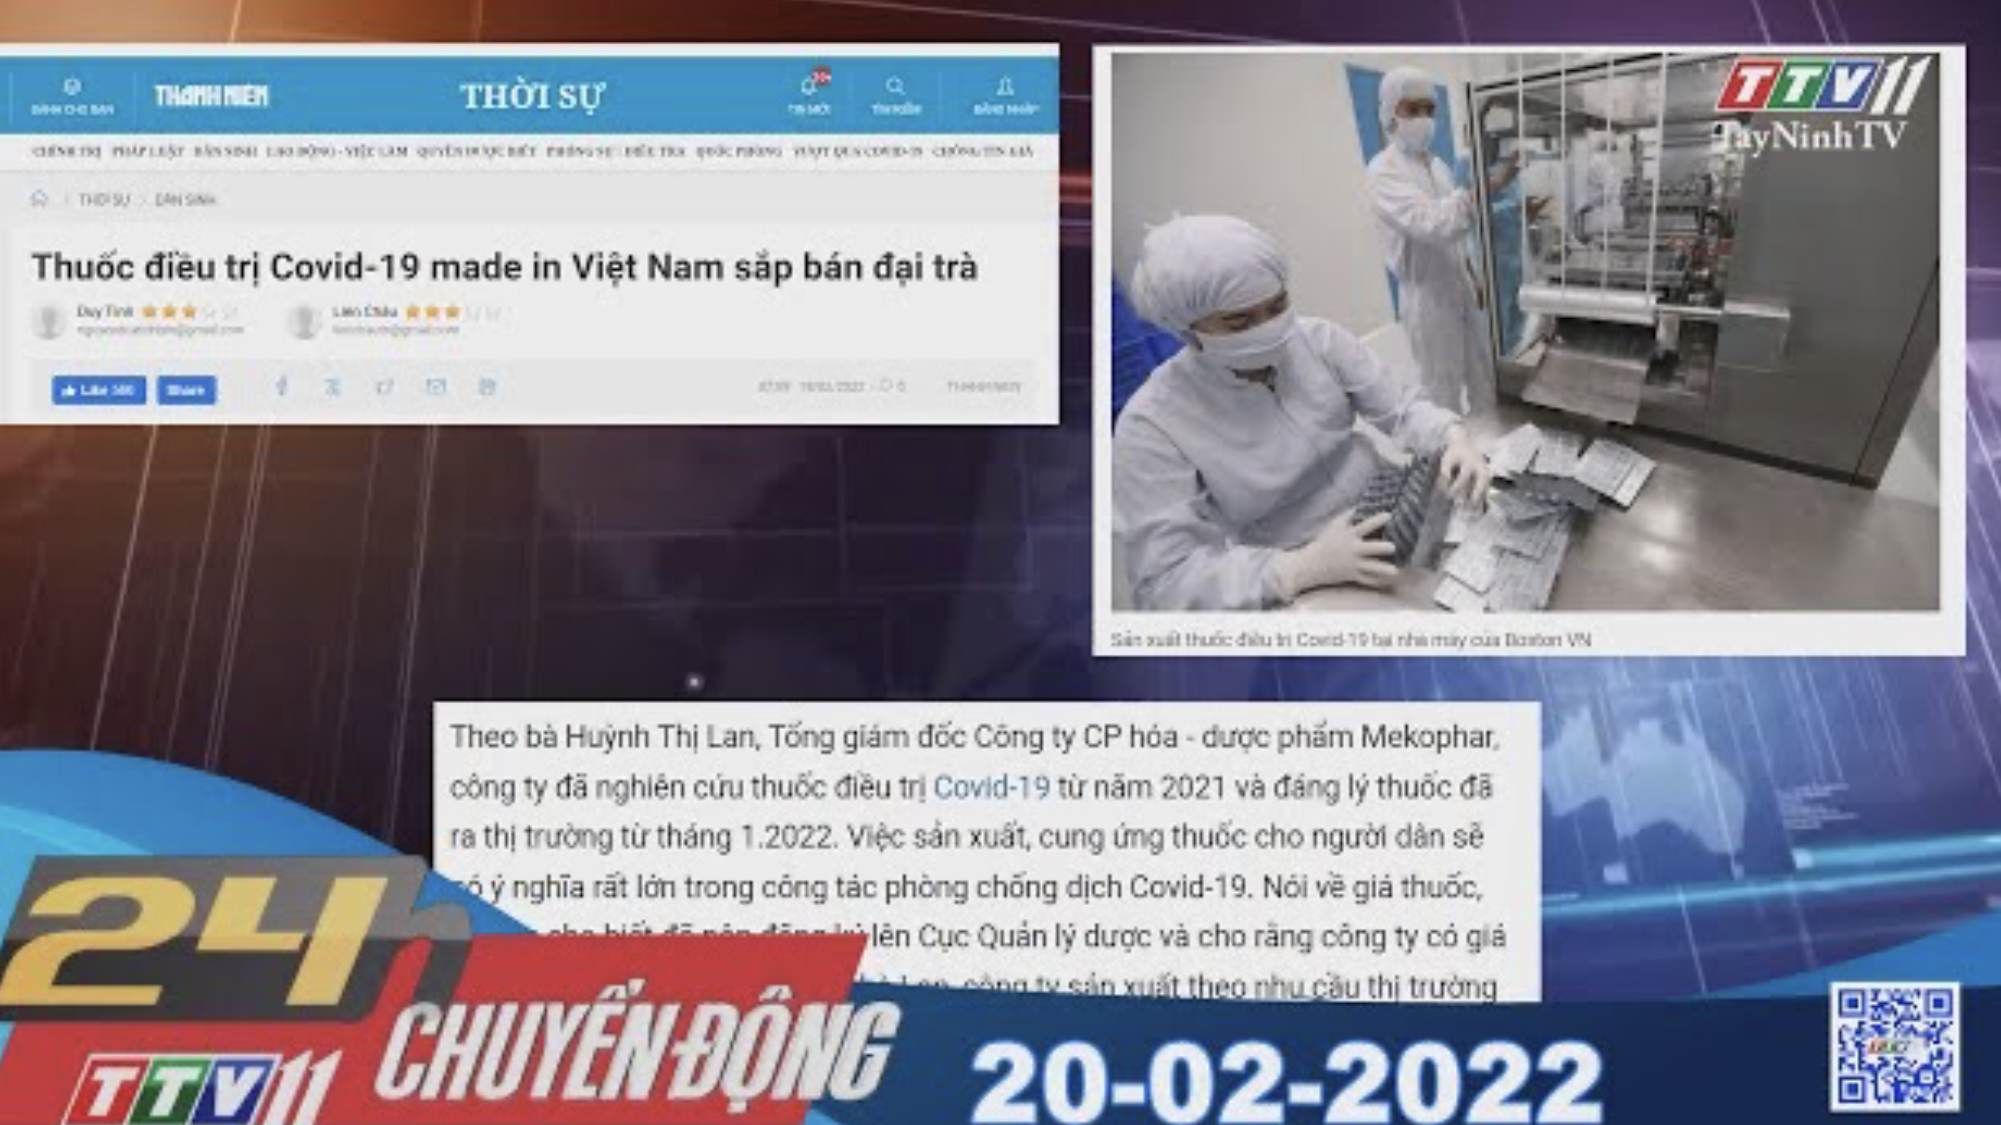 24h chuyển động 20-02-2022 | Tin tức hôm nay | TayNinhTV